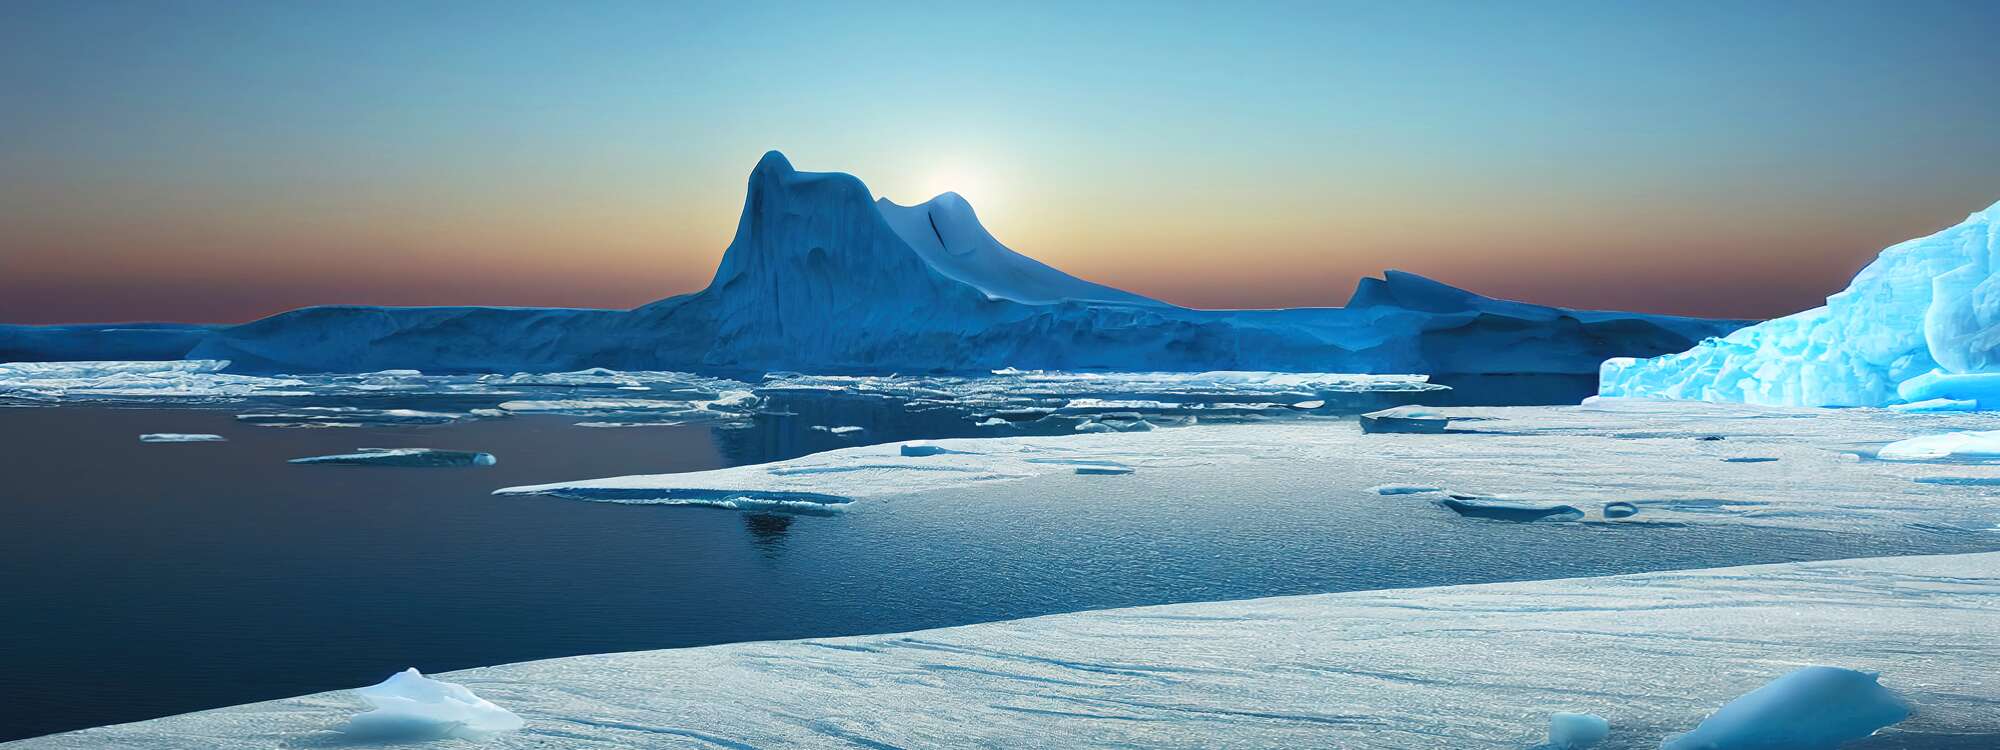 Antarctic Sund